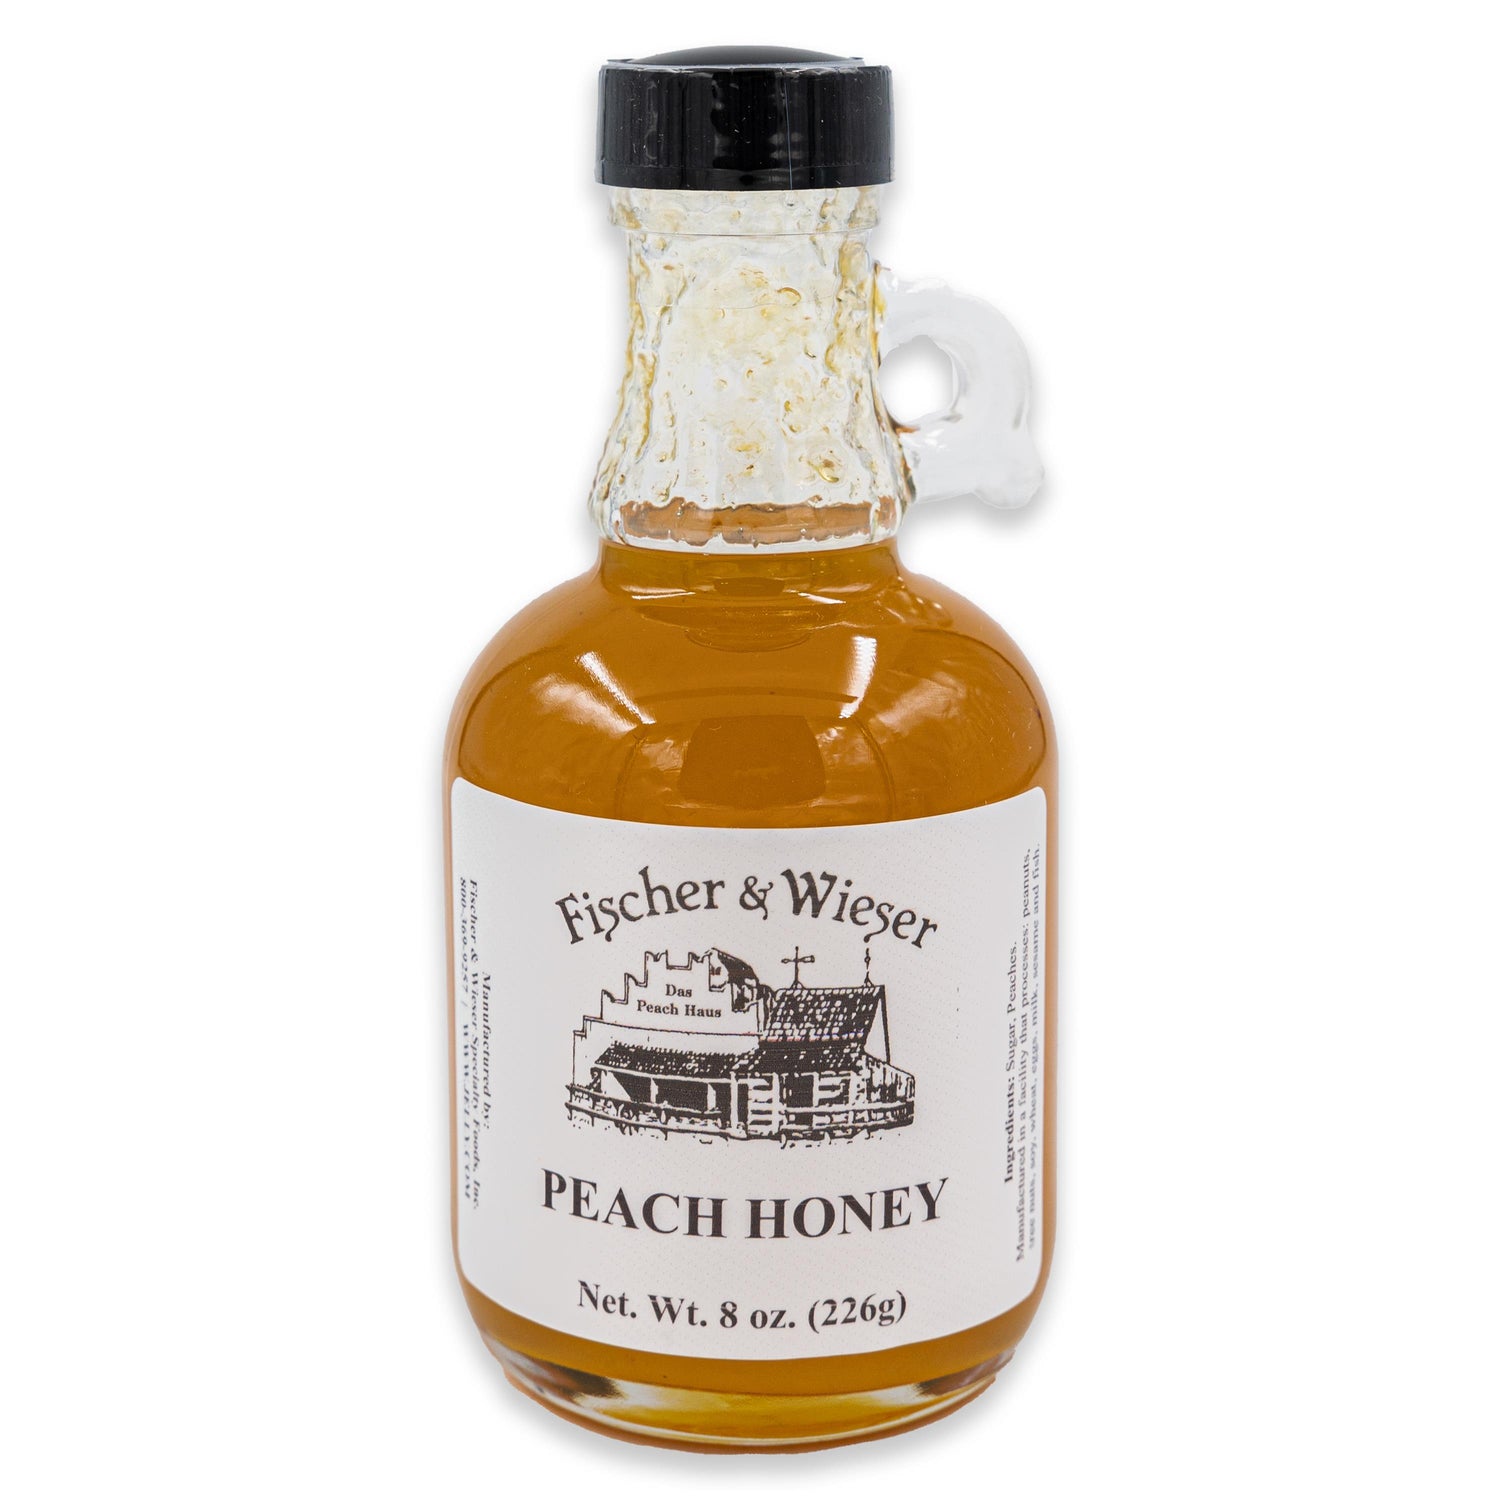 Fischer & Wieser Peach Honey